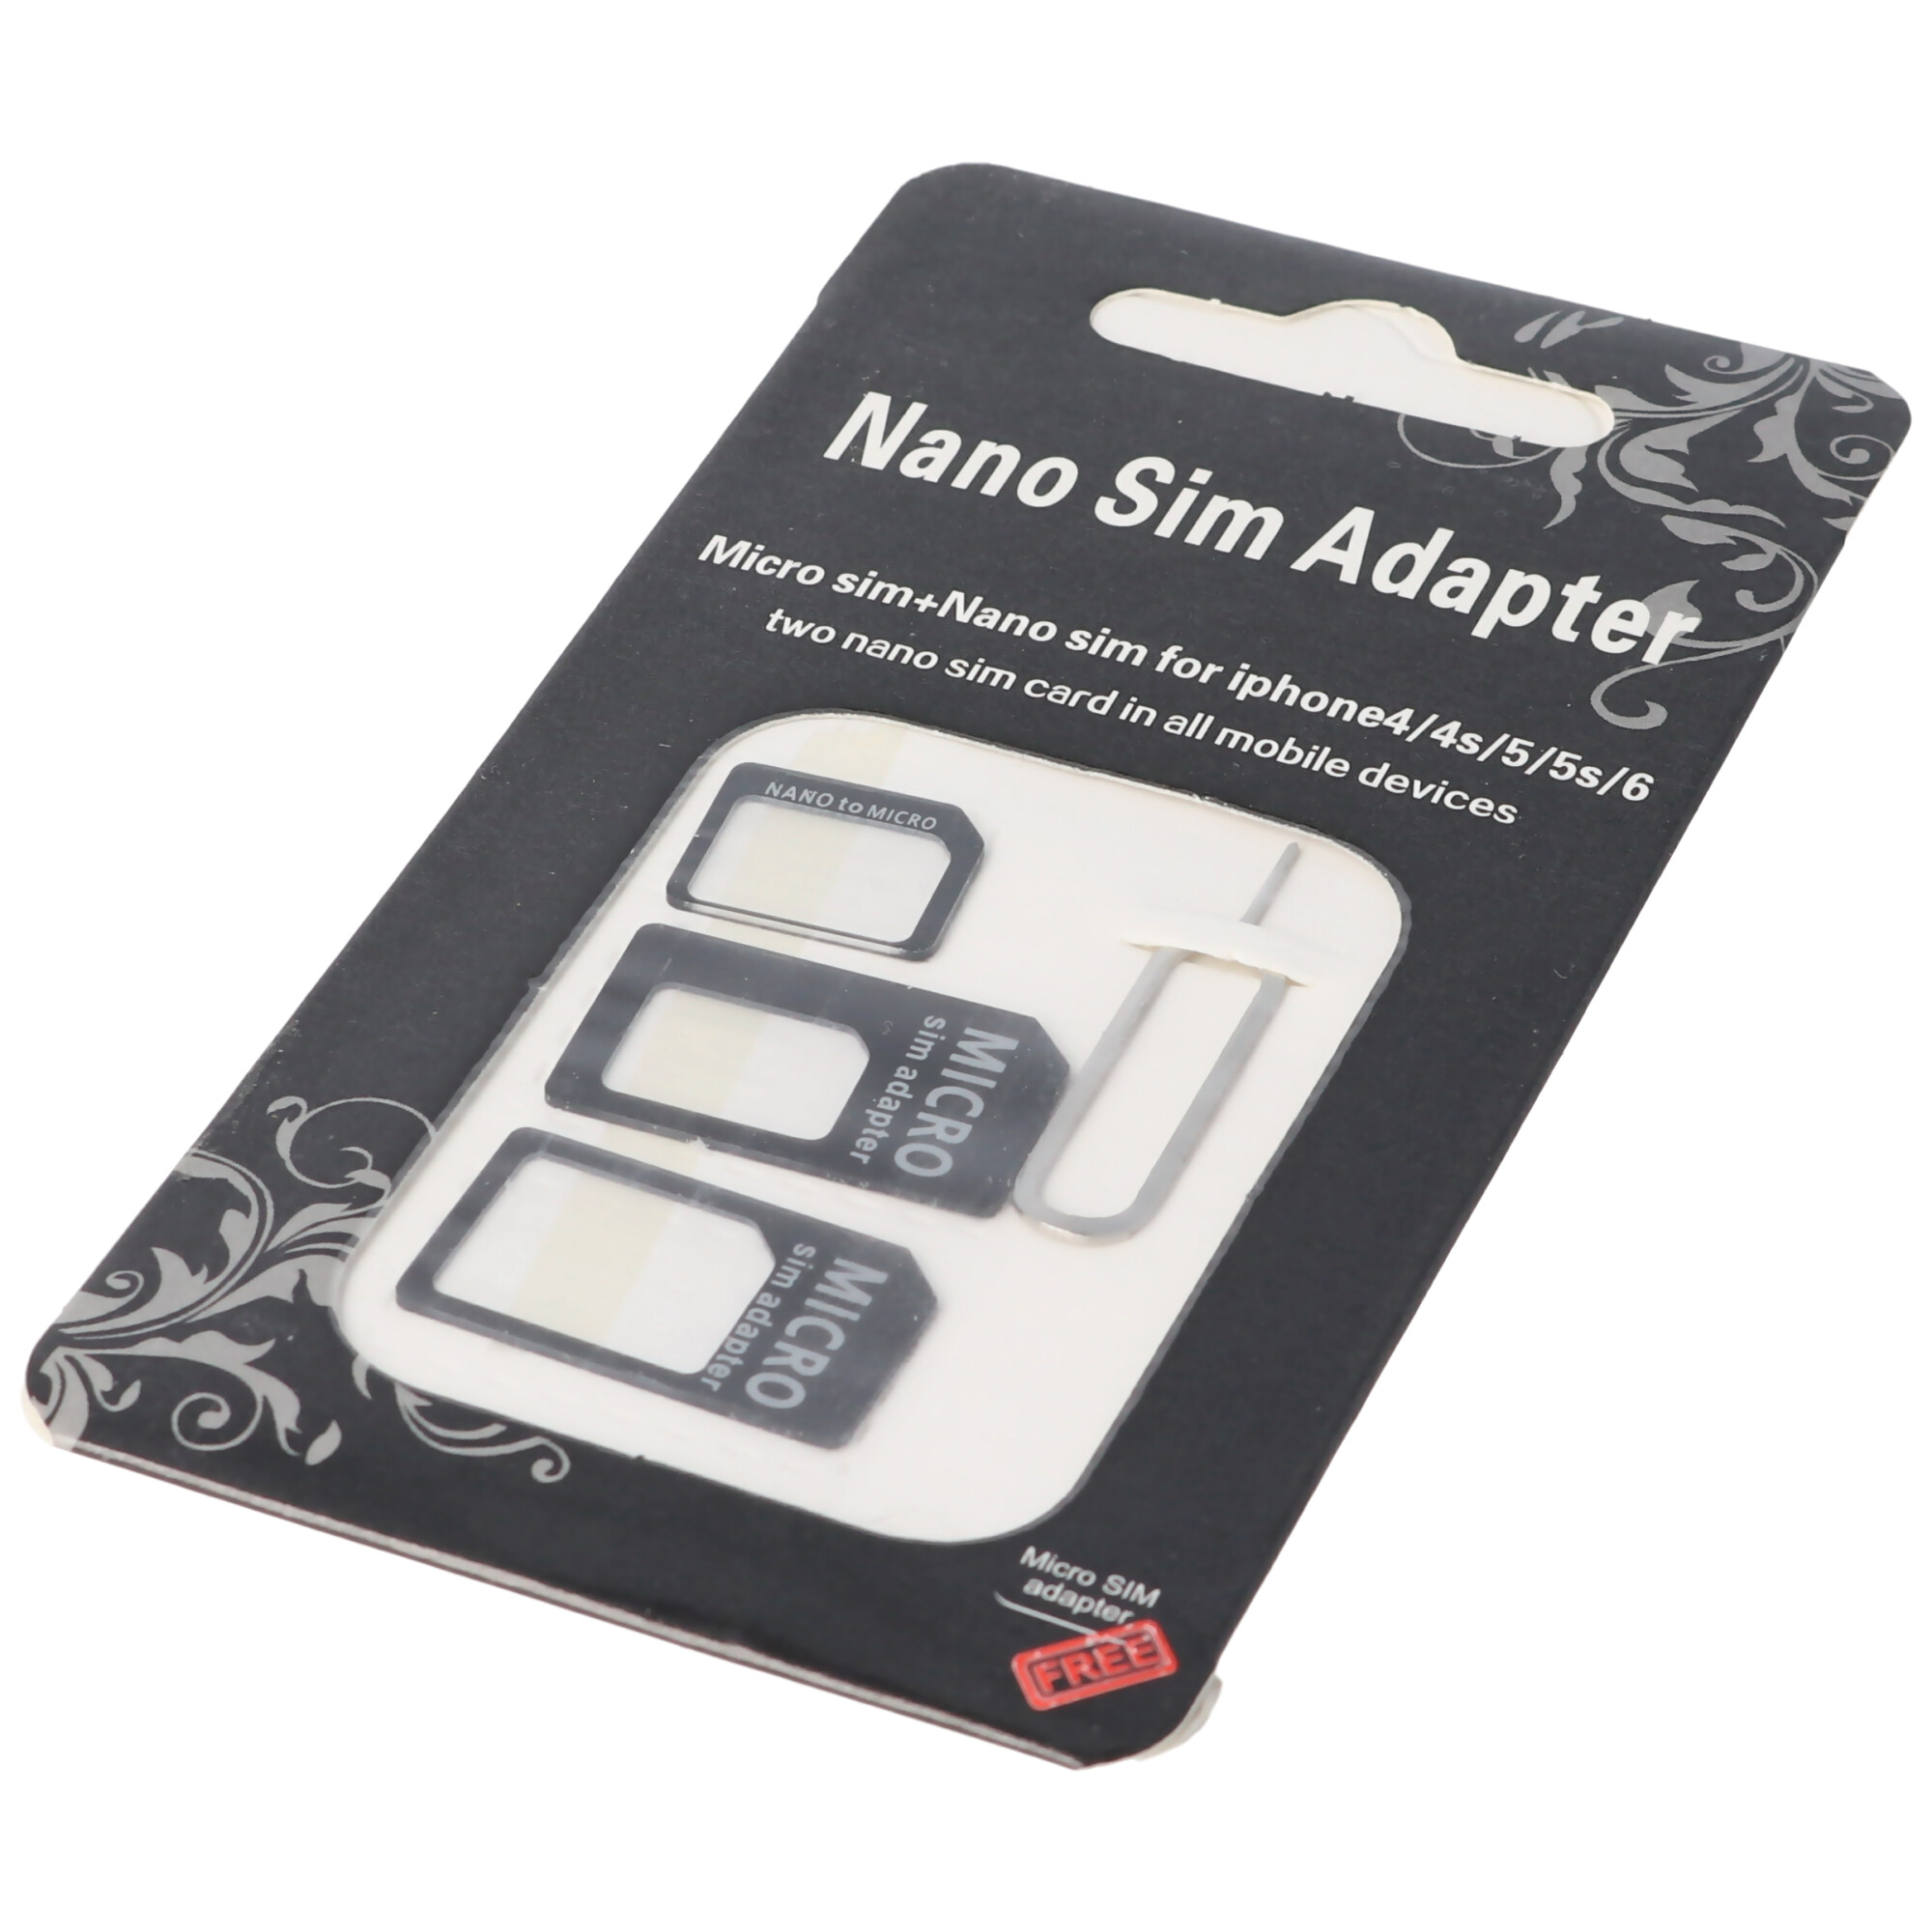 SIM-Adapter von Nano-SIM- auf das SIM-Kartenformat